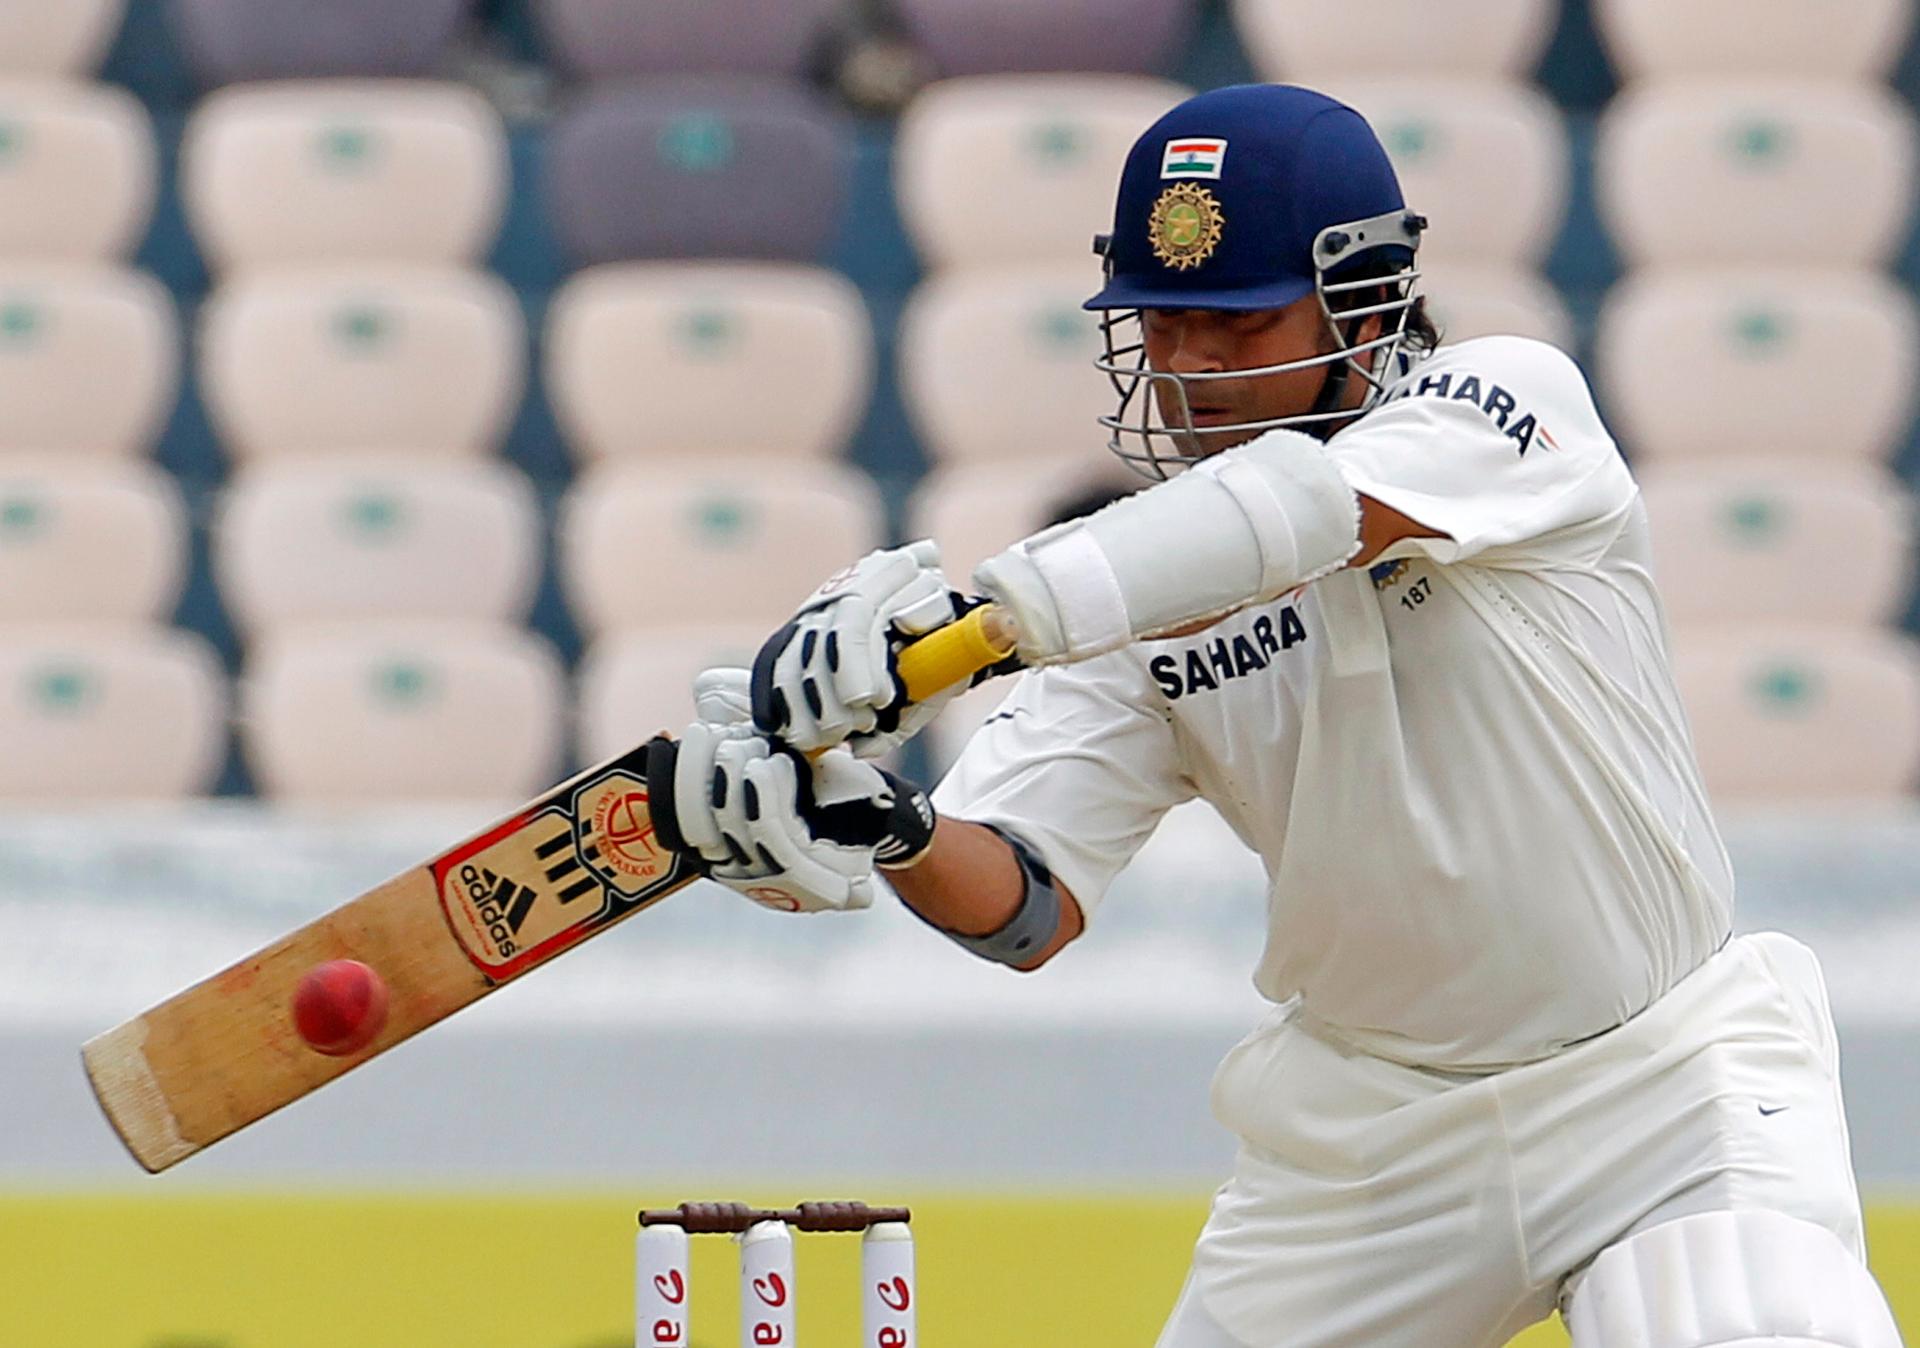 Sachin Tendulkar hits a shot during a match against New Zealand in Hyderabad, August 23, 2012. 